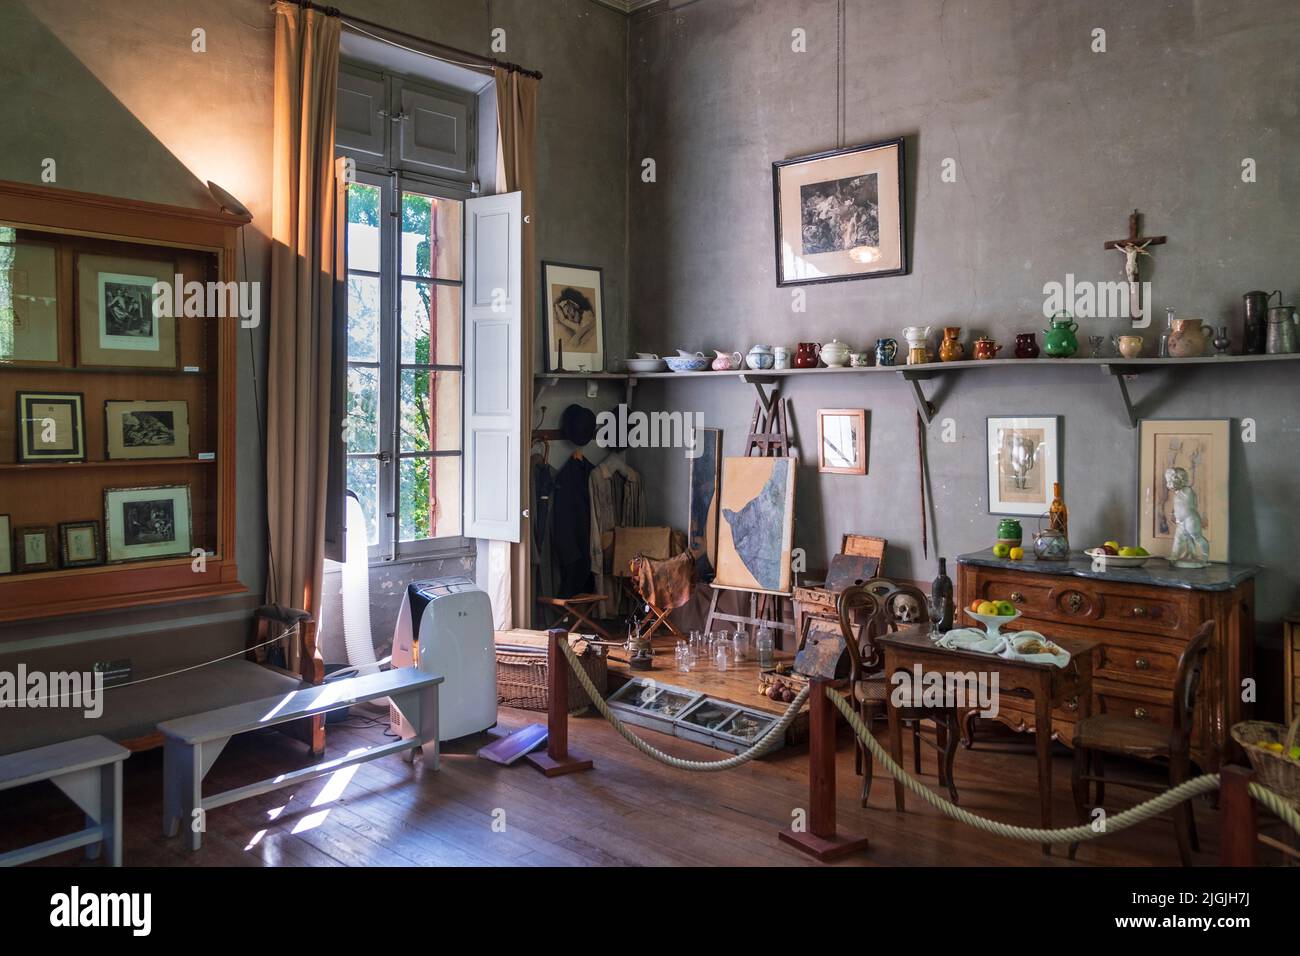 Atelier de Cezanne - art studio interior, Aix-en-Provence, France Stock Photo